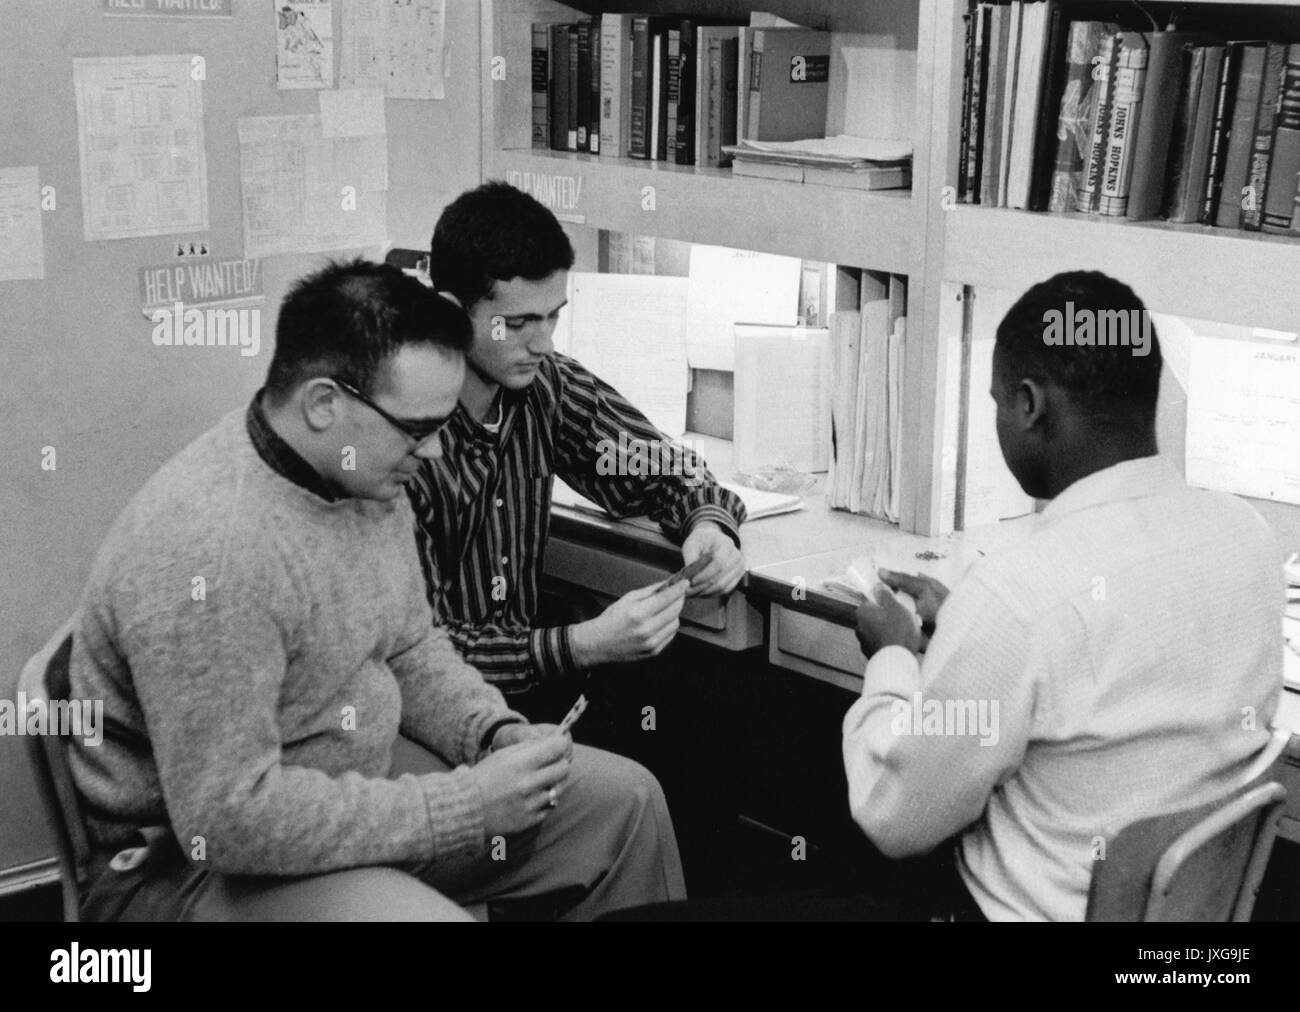 La vie d'étudiant, David John Ferrari, Donald Desantis, Ernest Bates, un étudiant américain africain avec Ferrari, Desantis et Bates sont jouer au poker dans leur dortoir, 1958. Banque D'Images